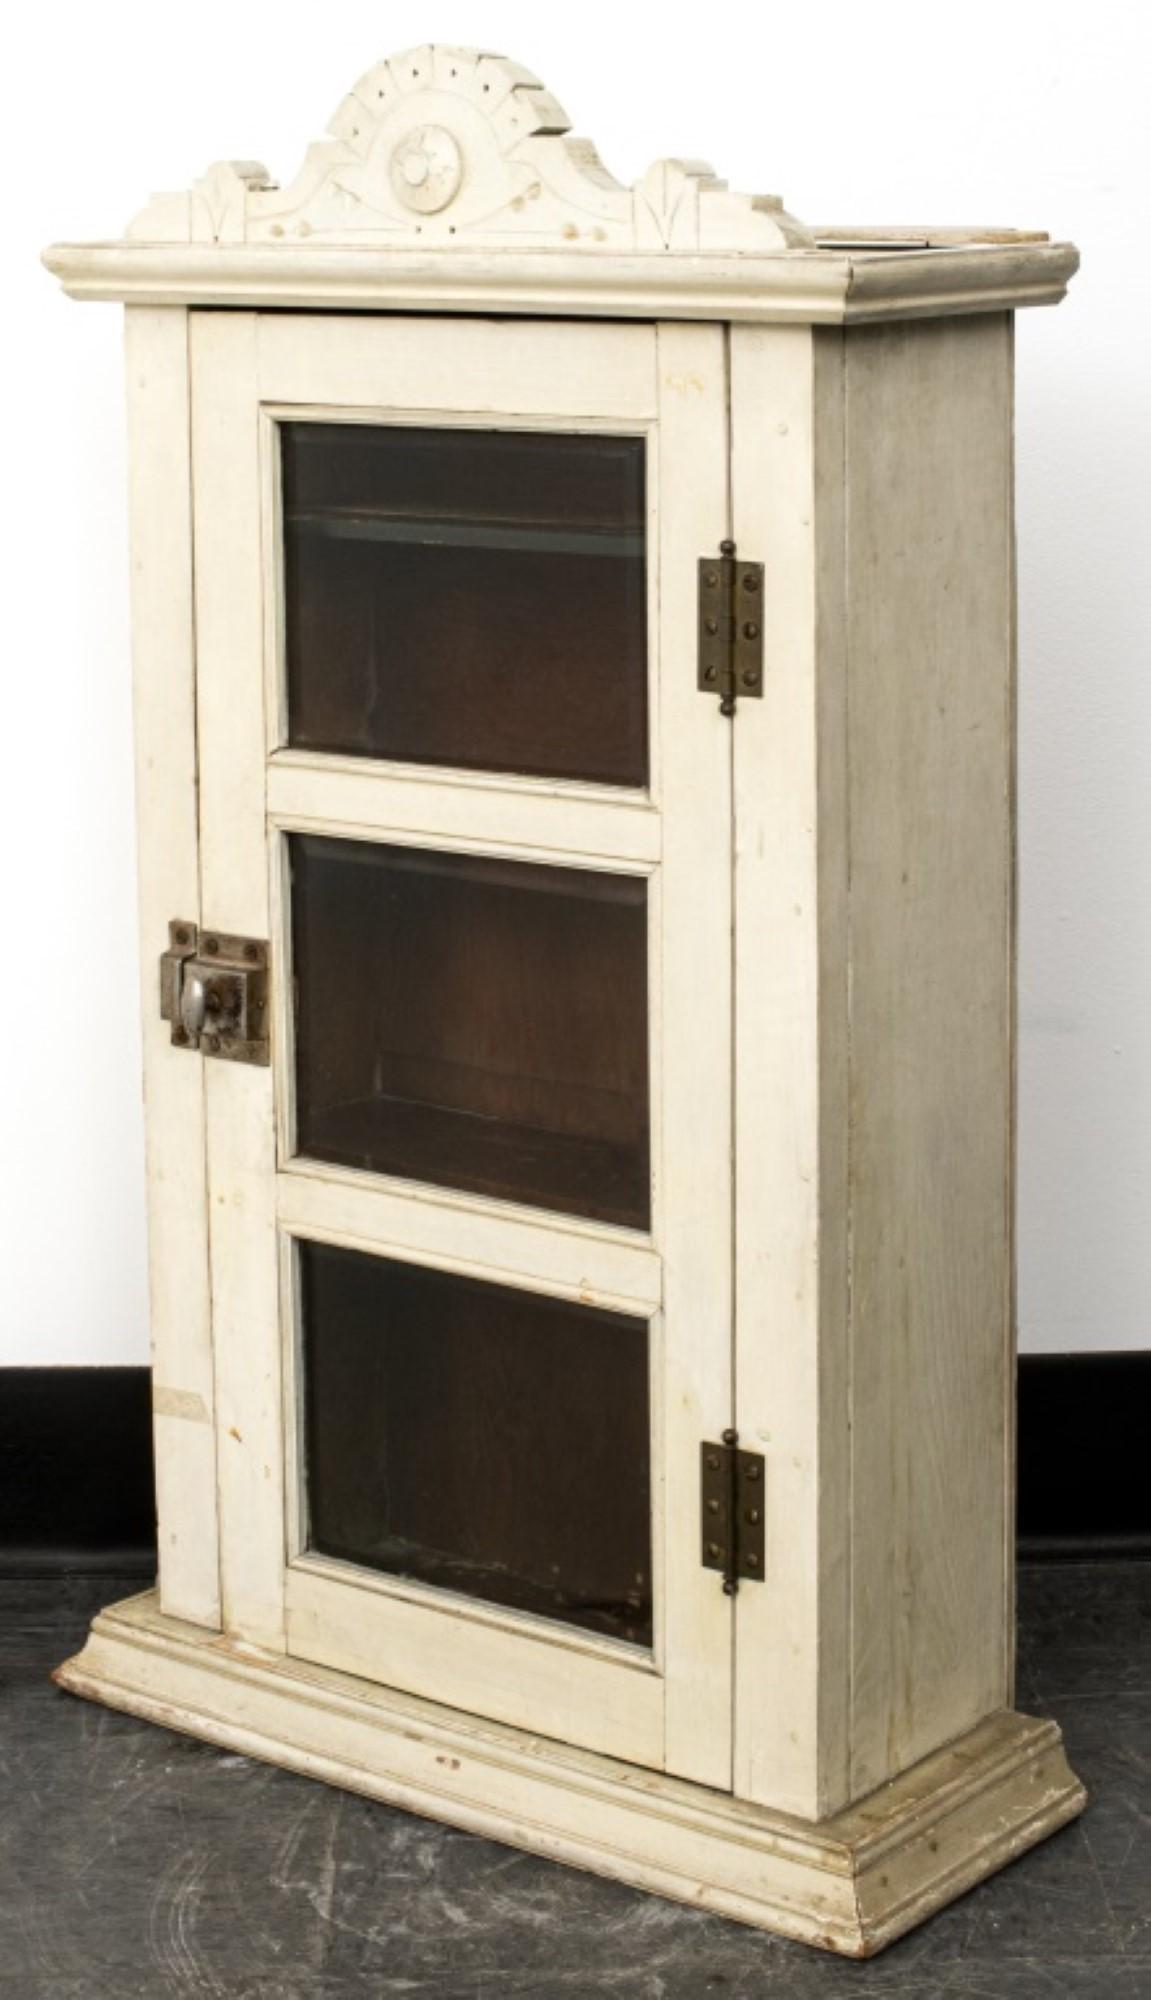 Rustikaler weiß gestrichener Hängeschrank

Merkmale: Verglaste Tür und Einlegeböden, rustikale weiß lackierte Oberfläche.

Händler: S138XX